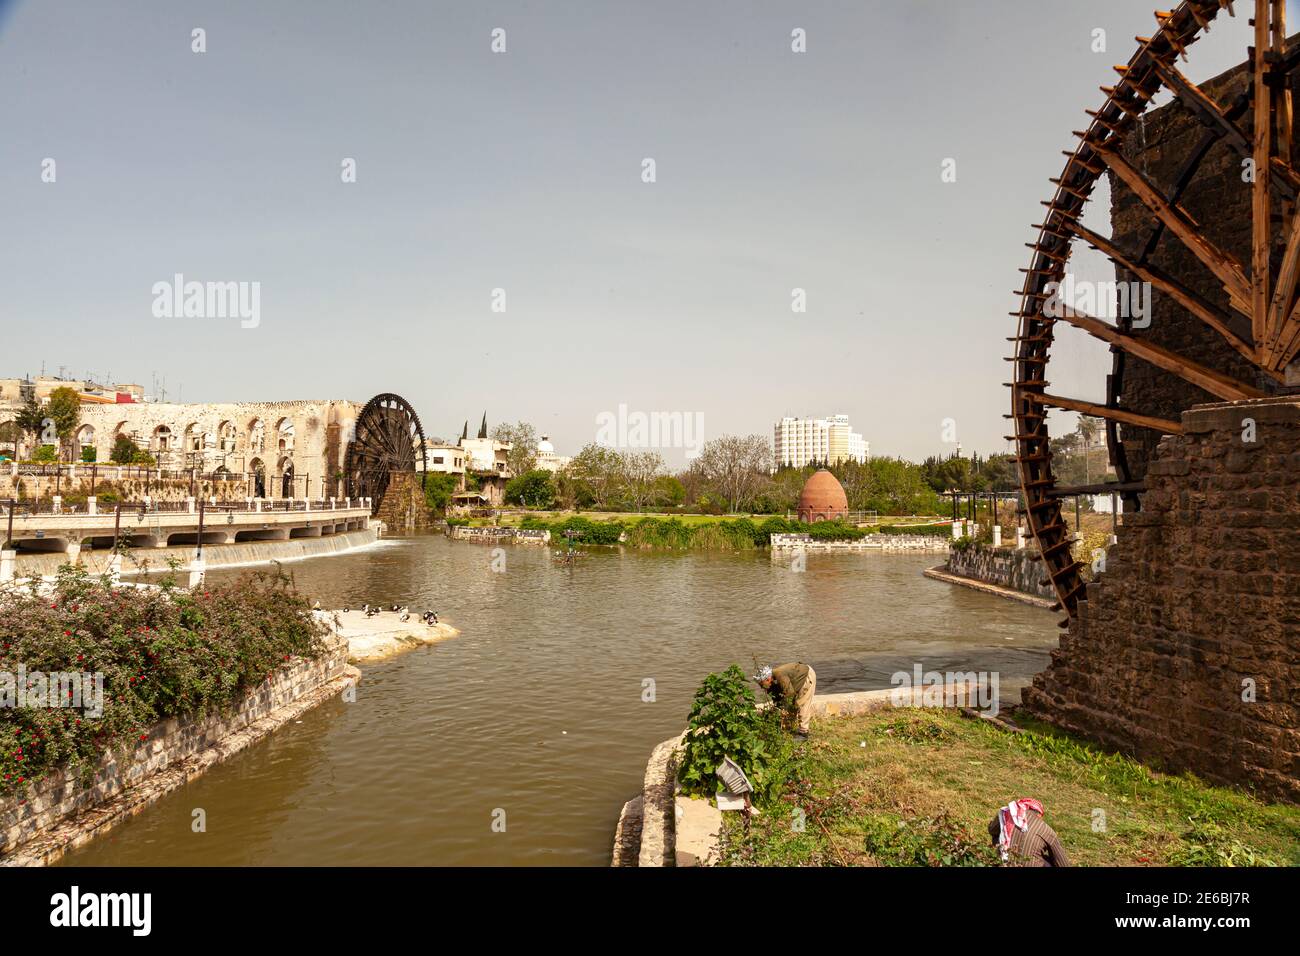 Hama Syrie 04-02-2010: Paysage urbain de Hama avec la rivière Orontes et les célèbres Norias (roues d'eau) construites pour fournir l'eau de la rivière aux aqueducs historiques de FO Banque D'Images